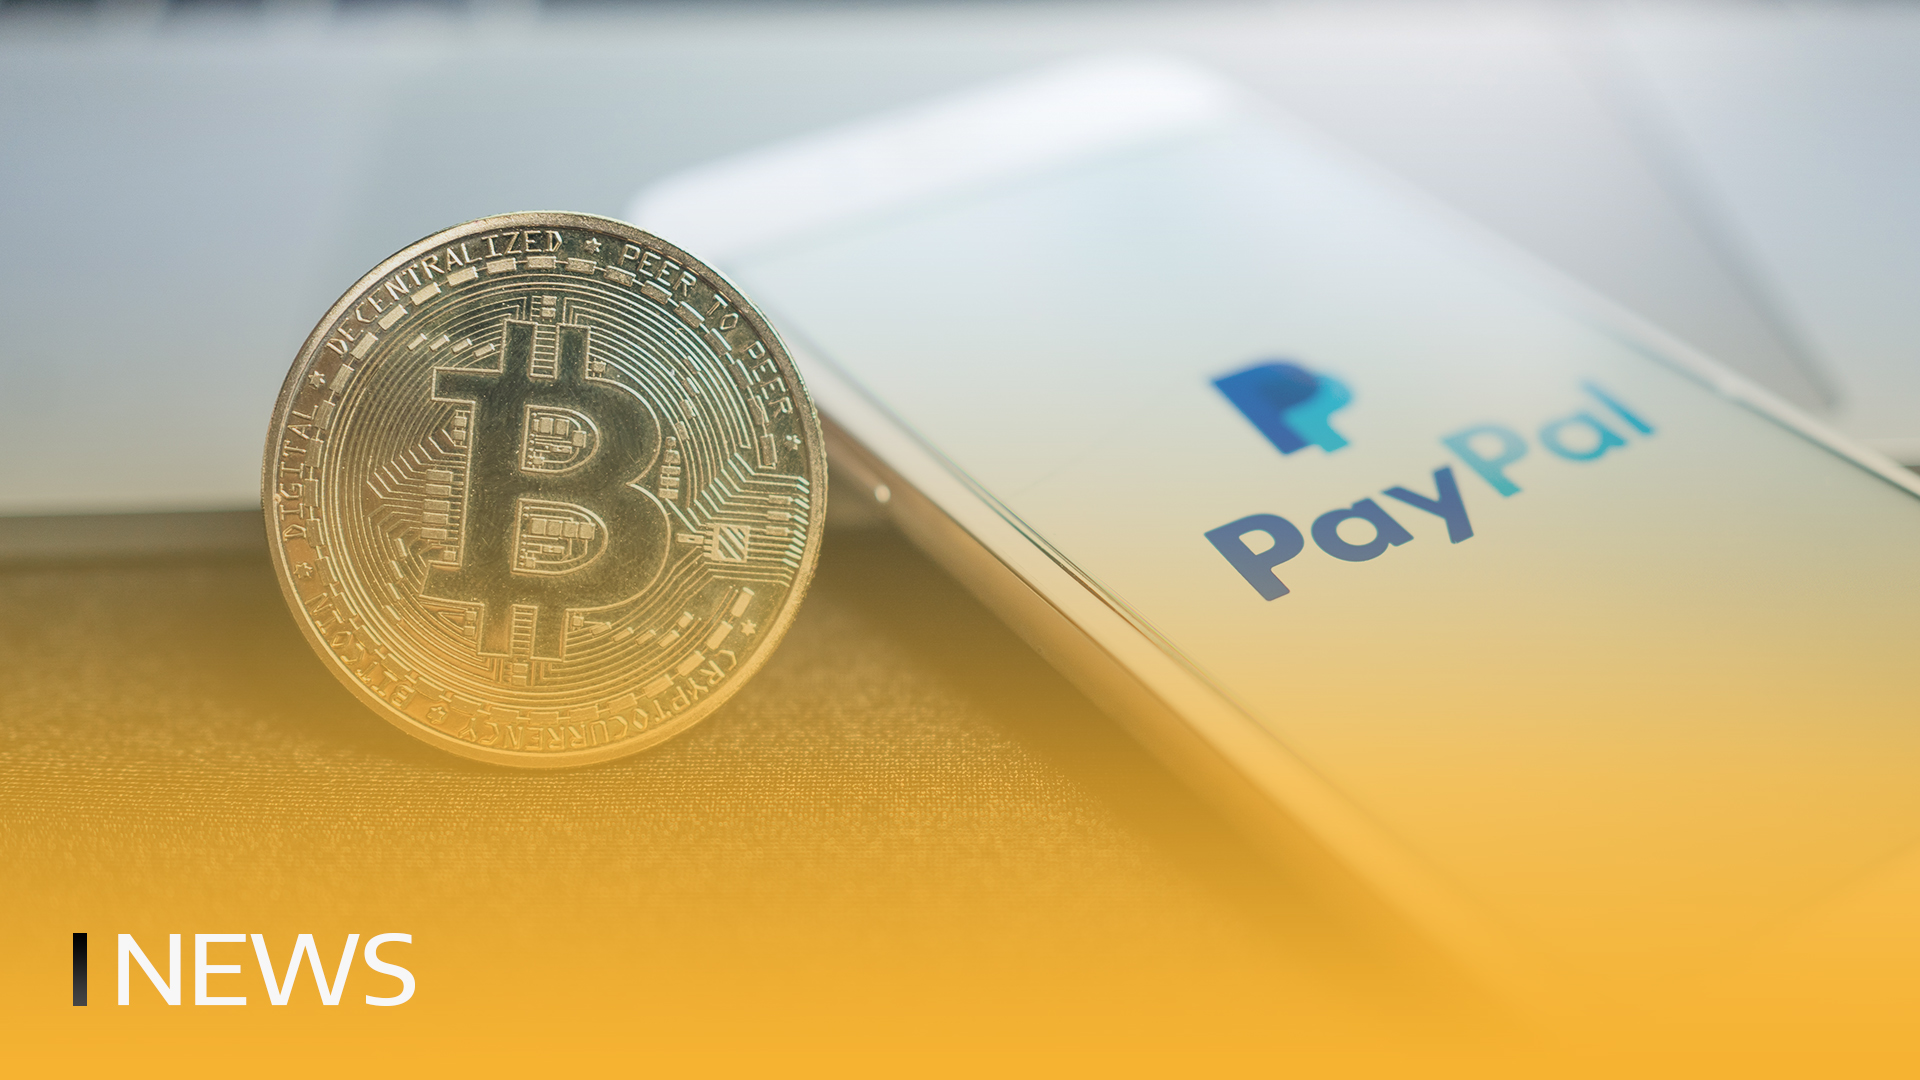 PayPal introduce ricompense per l'estrazione sostenibile di Bitcoin